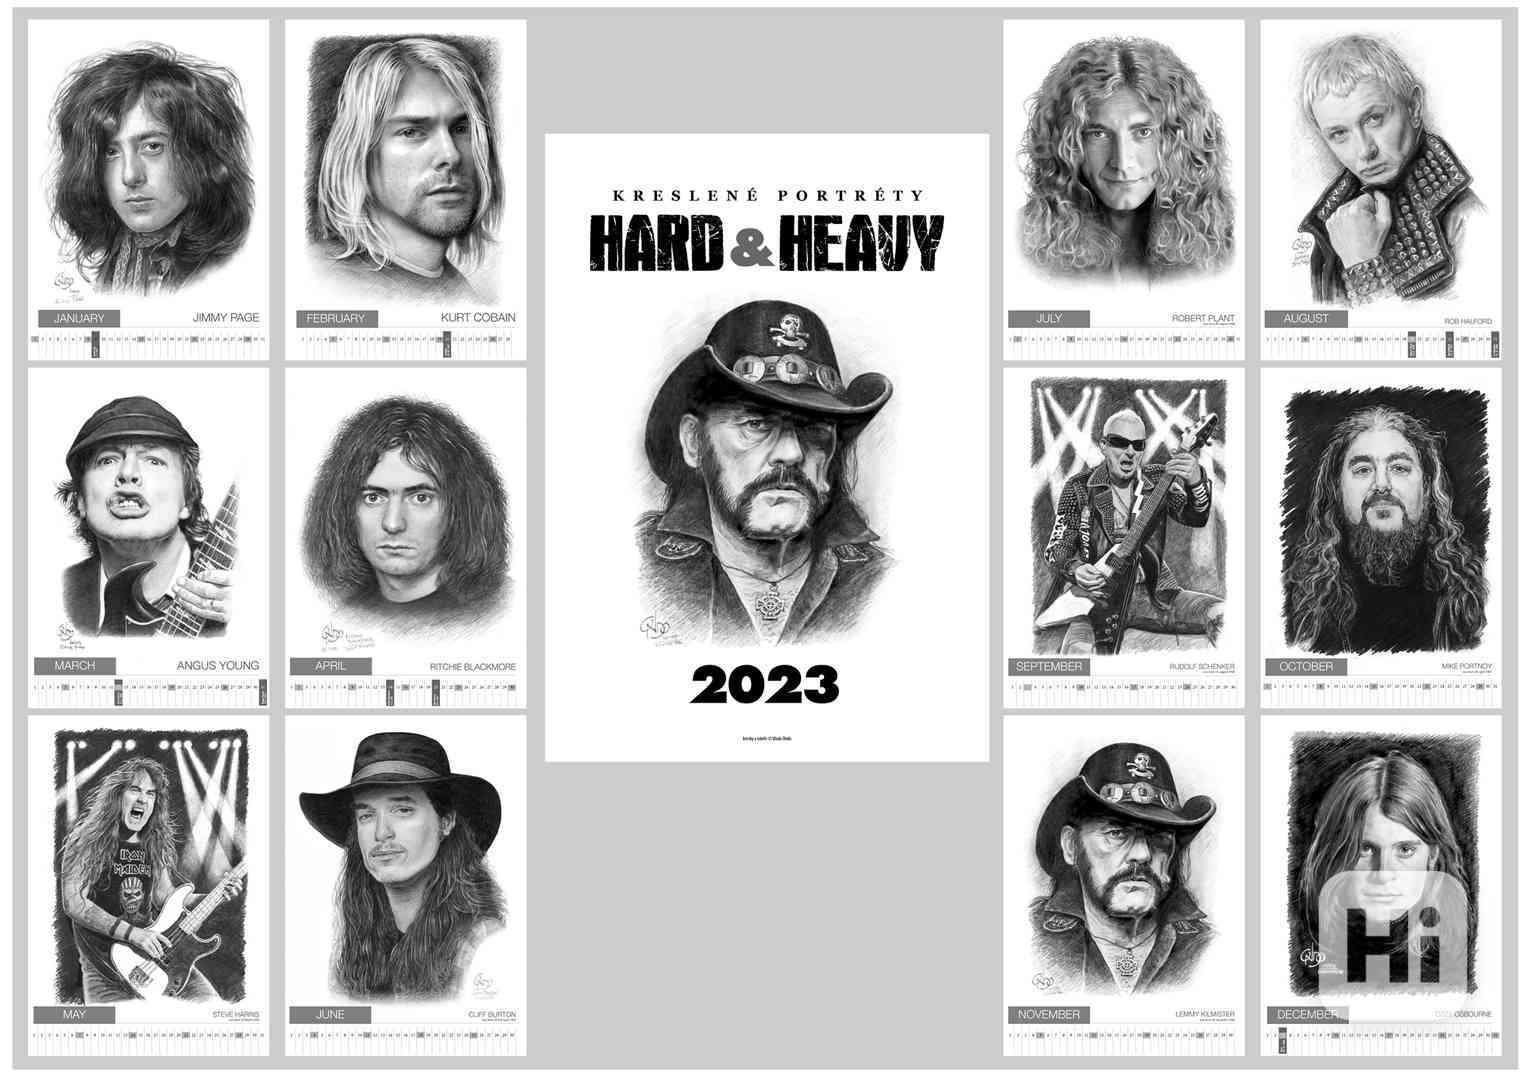 Kalendář kreslené portréty - Ozzy, Lemmy, Halford, Plant - foto 1